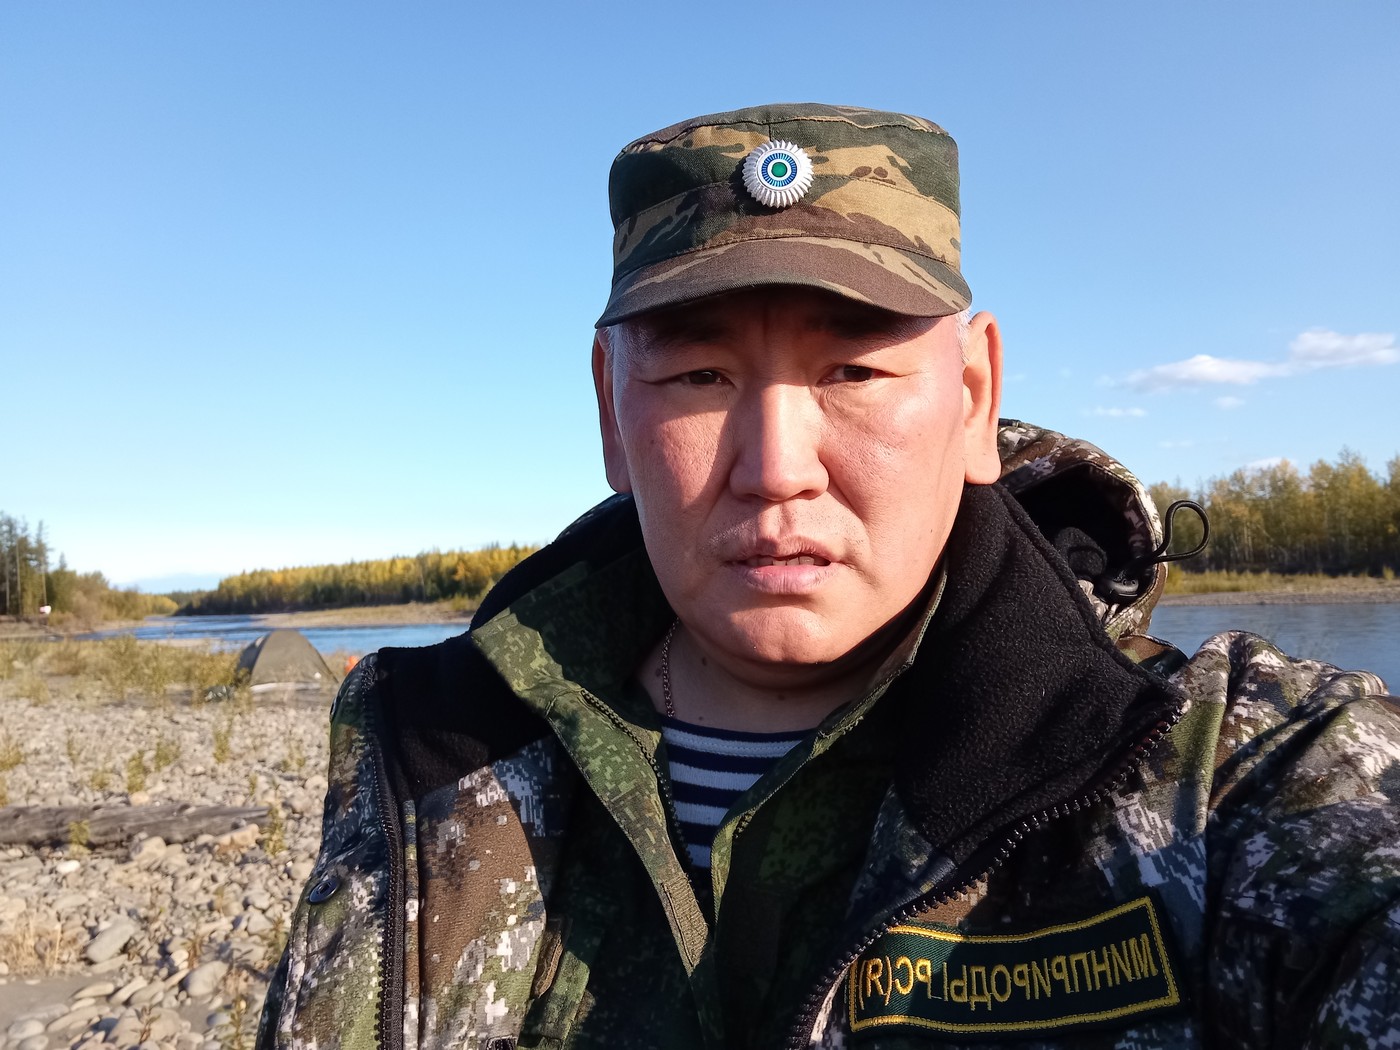 Якутия: охотничье сообщество – это костяк общества